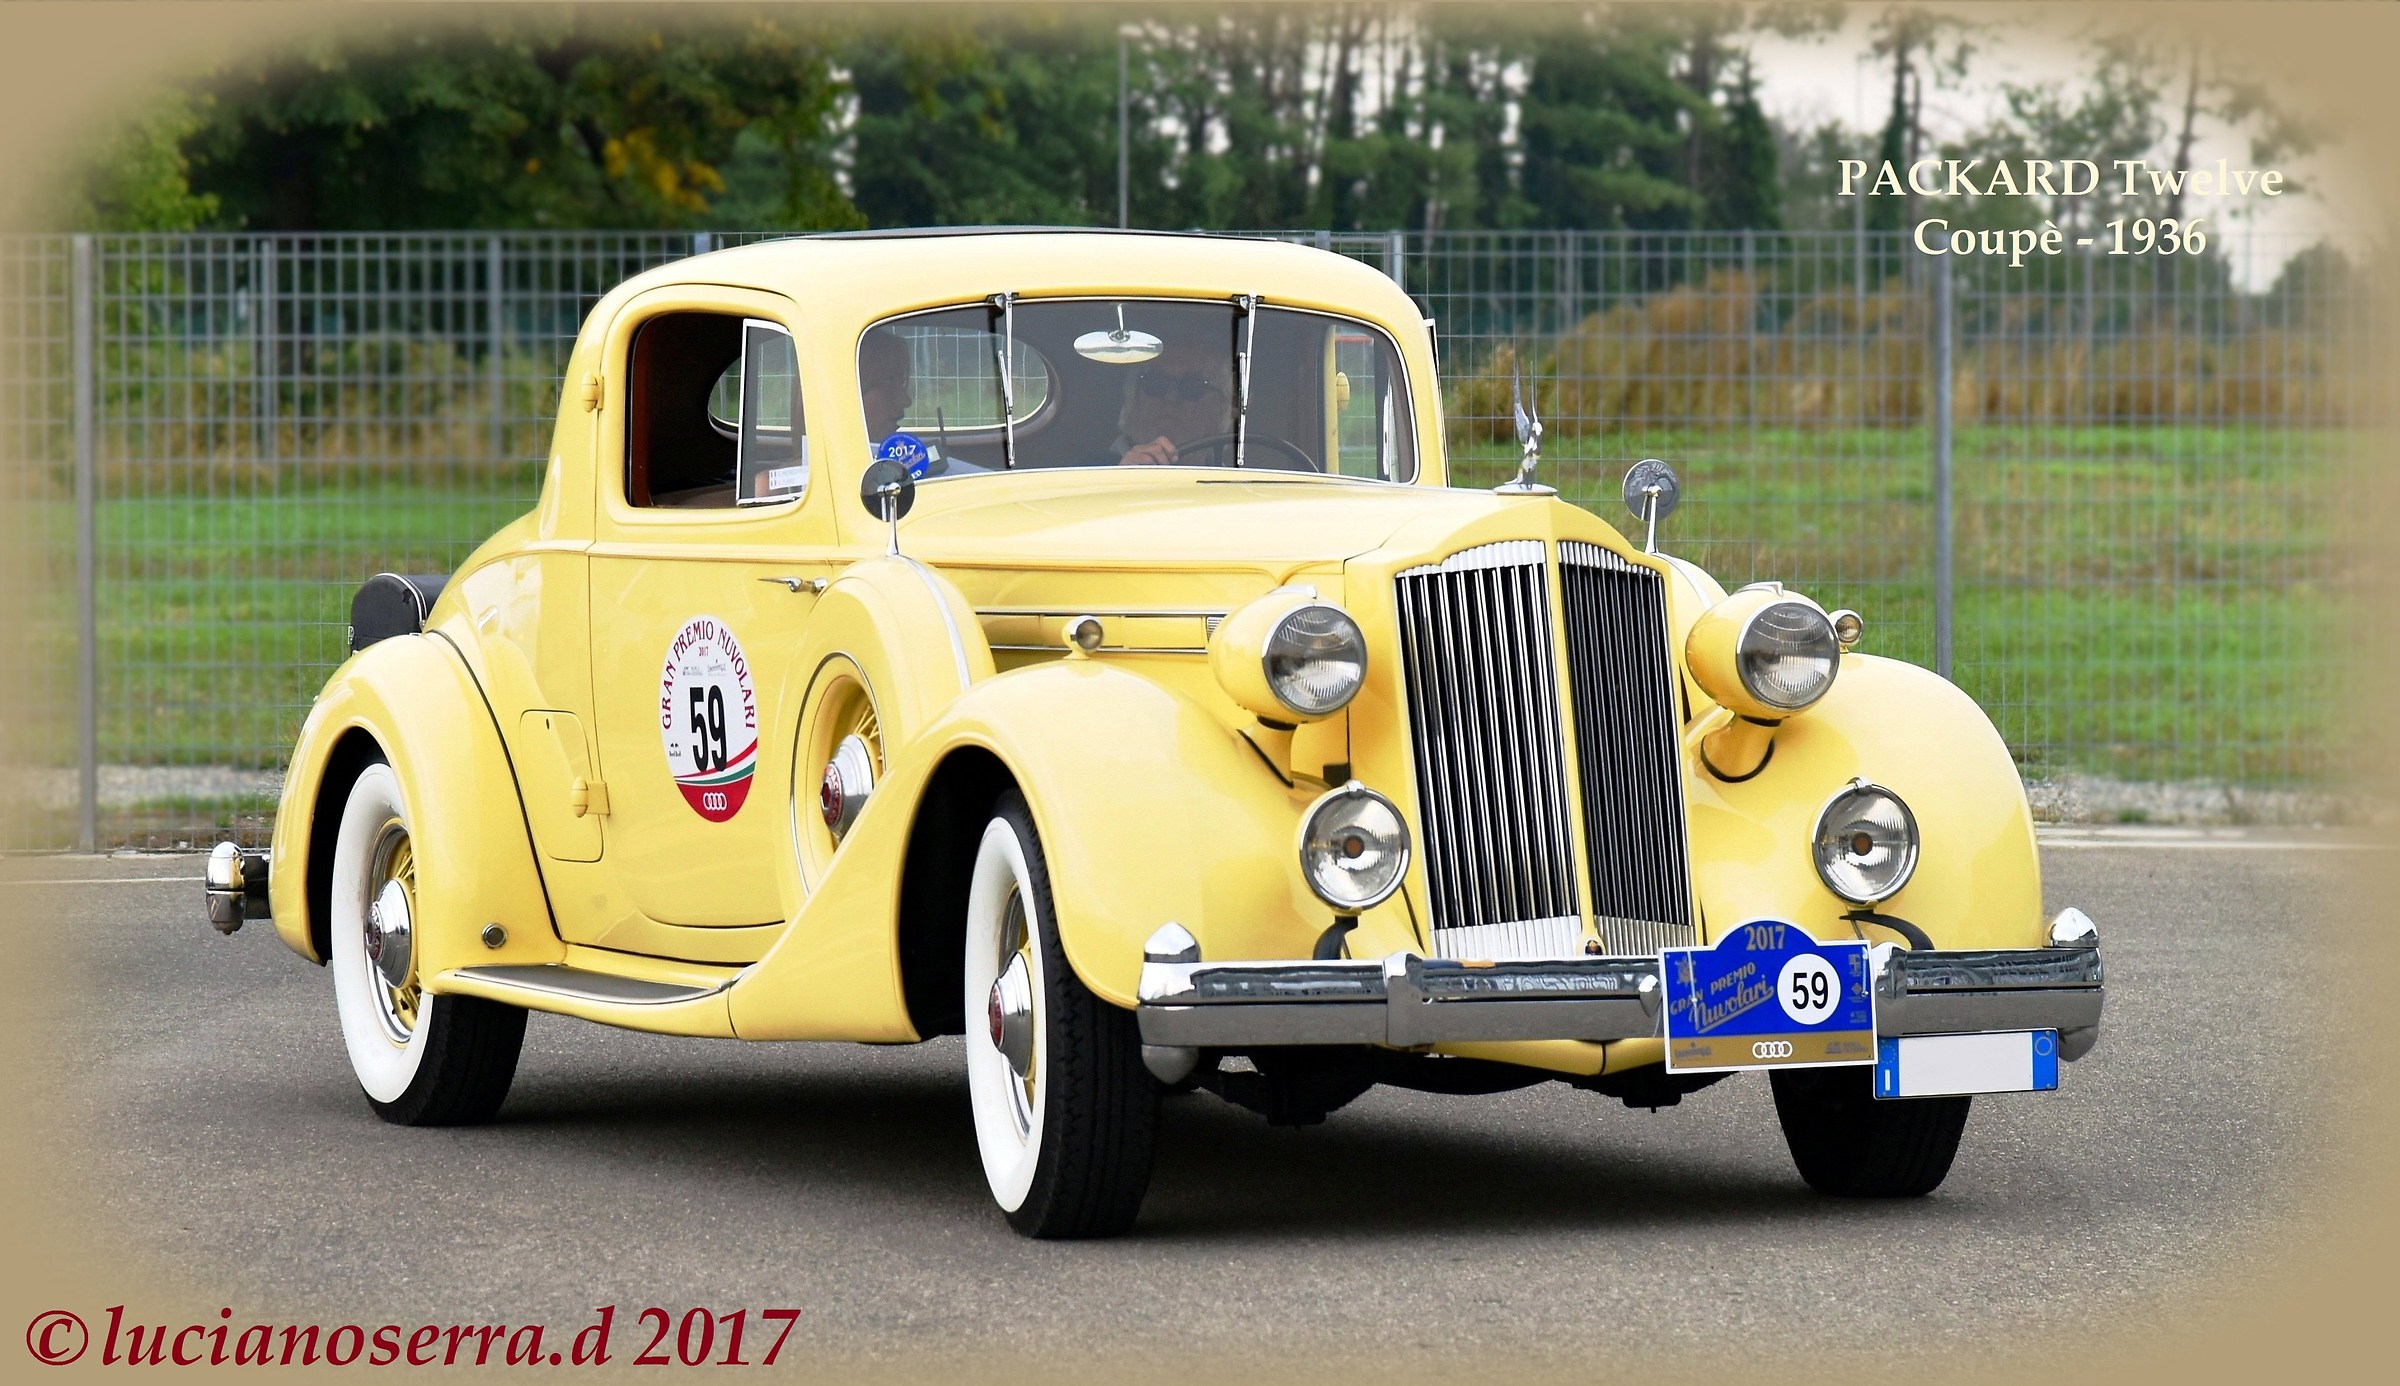 Packard Twelve Coupè - 1936...